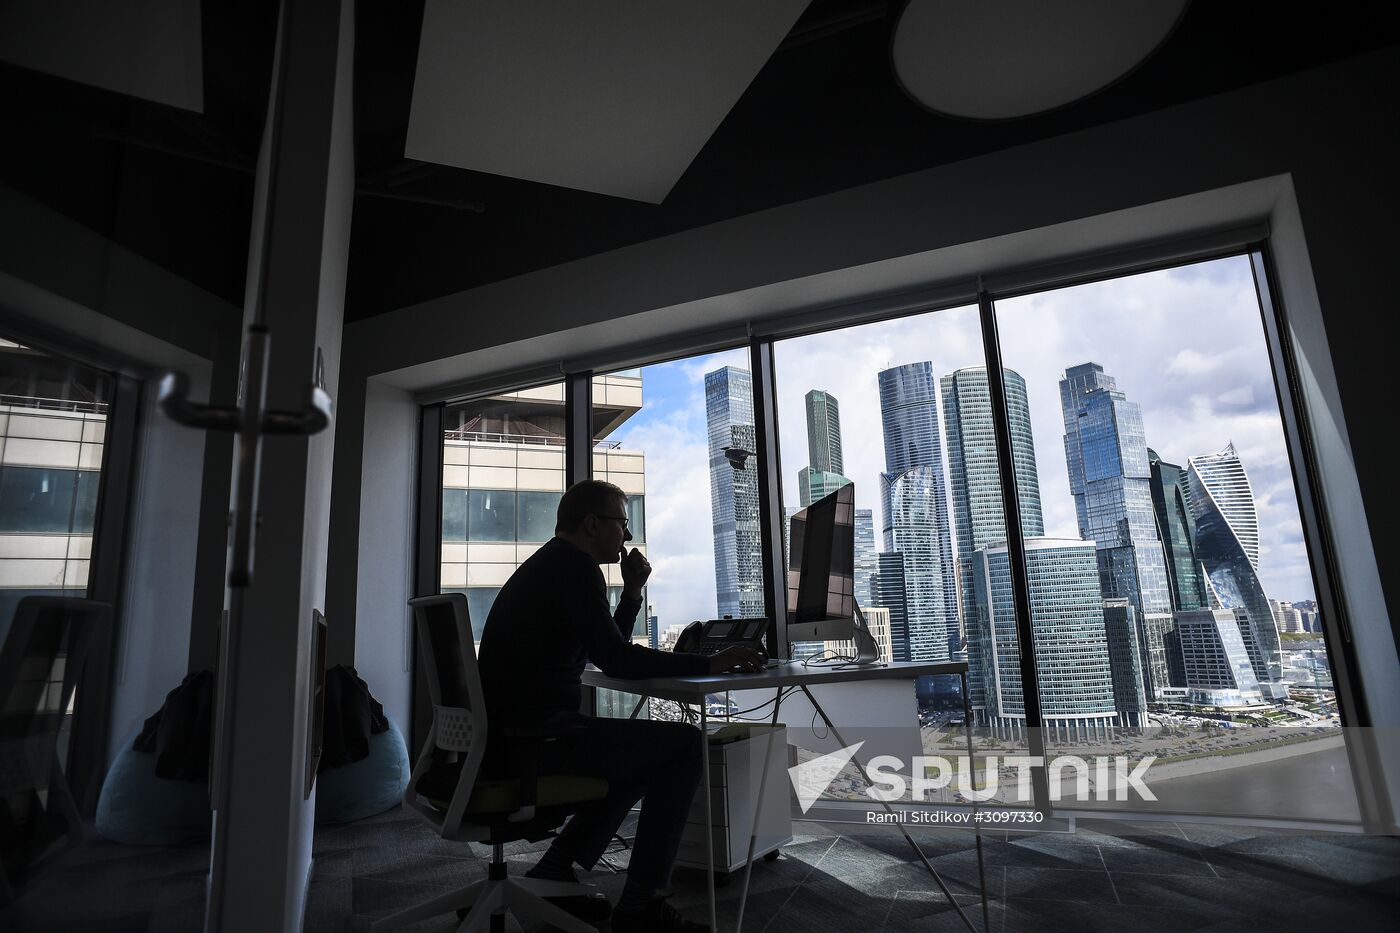 New Sberbank office in Agile format